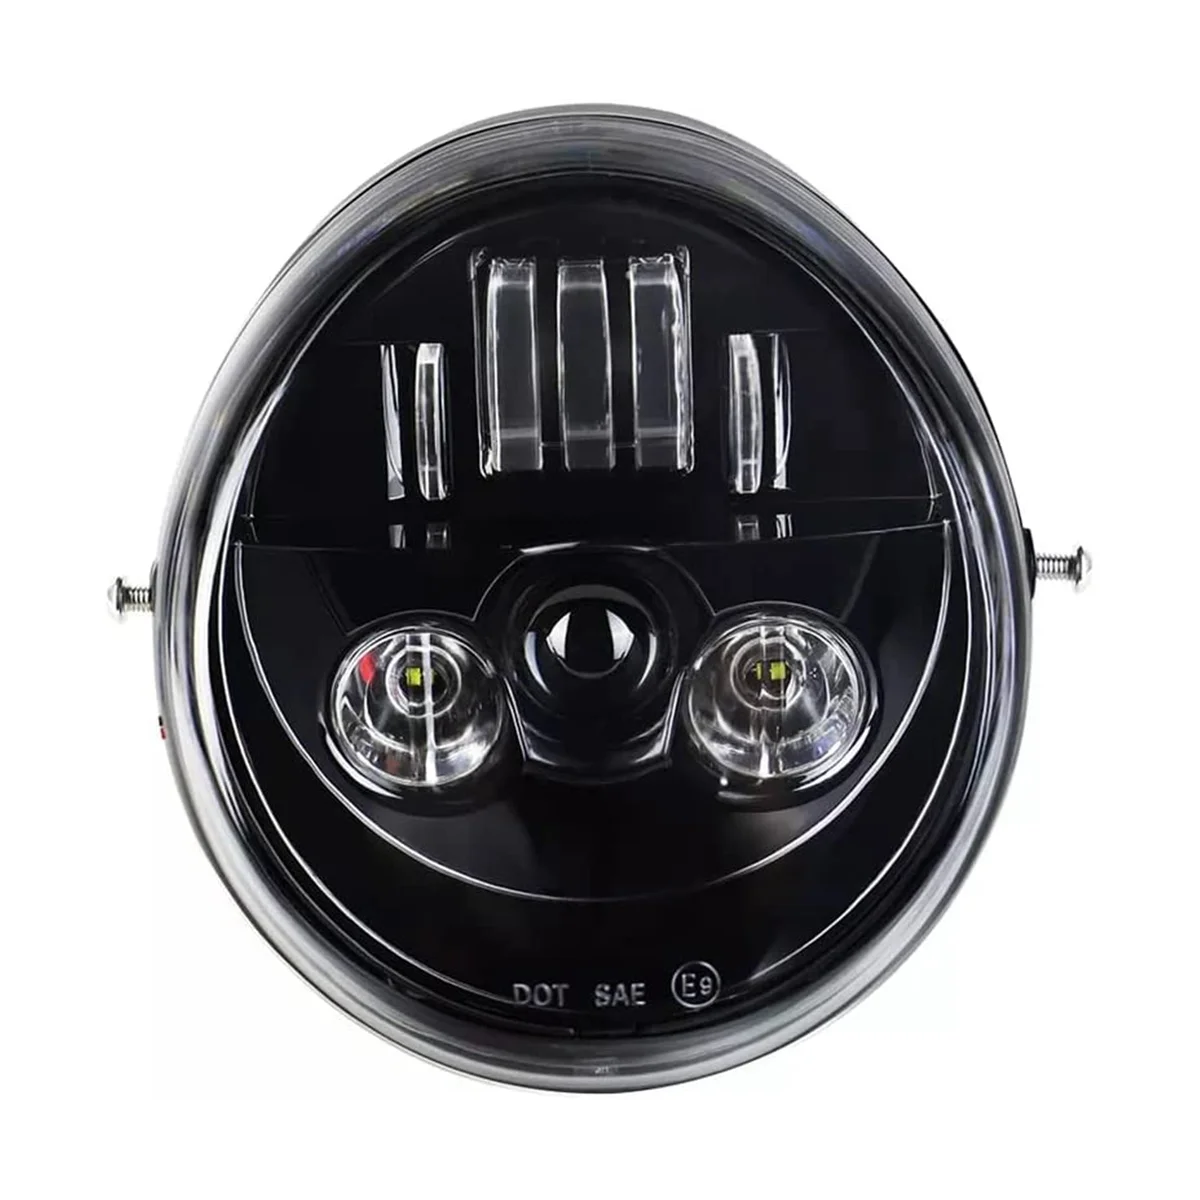 

For V Rod VRSCF VRSC VRSCR 2002-2017 Vrod LED Front Headlight HI/Low Beam Motorcycle Head Light Lamp, Black